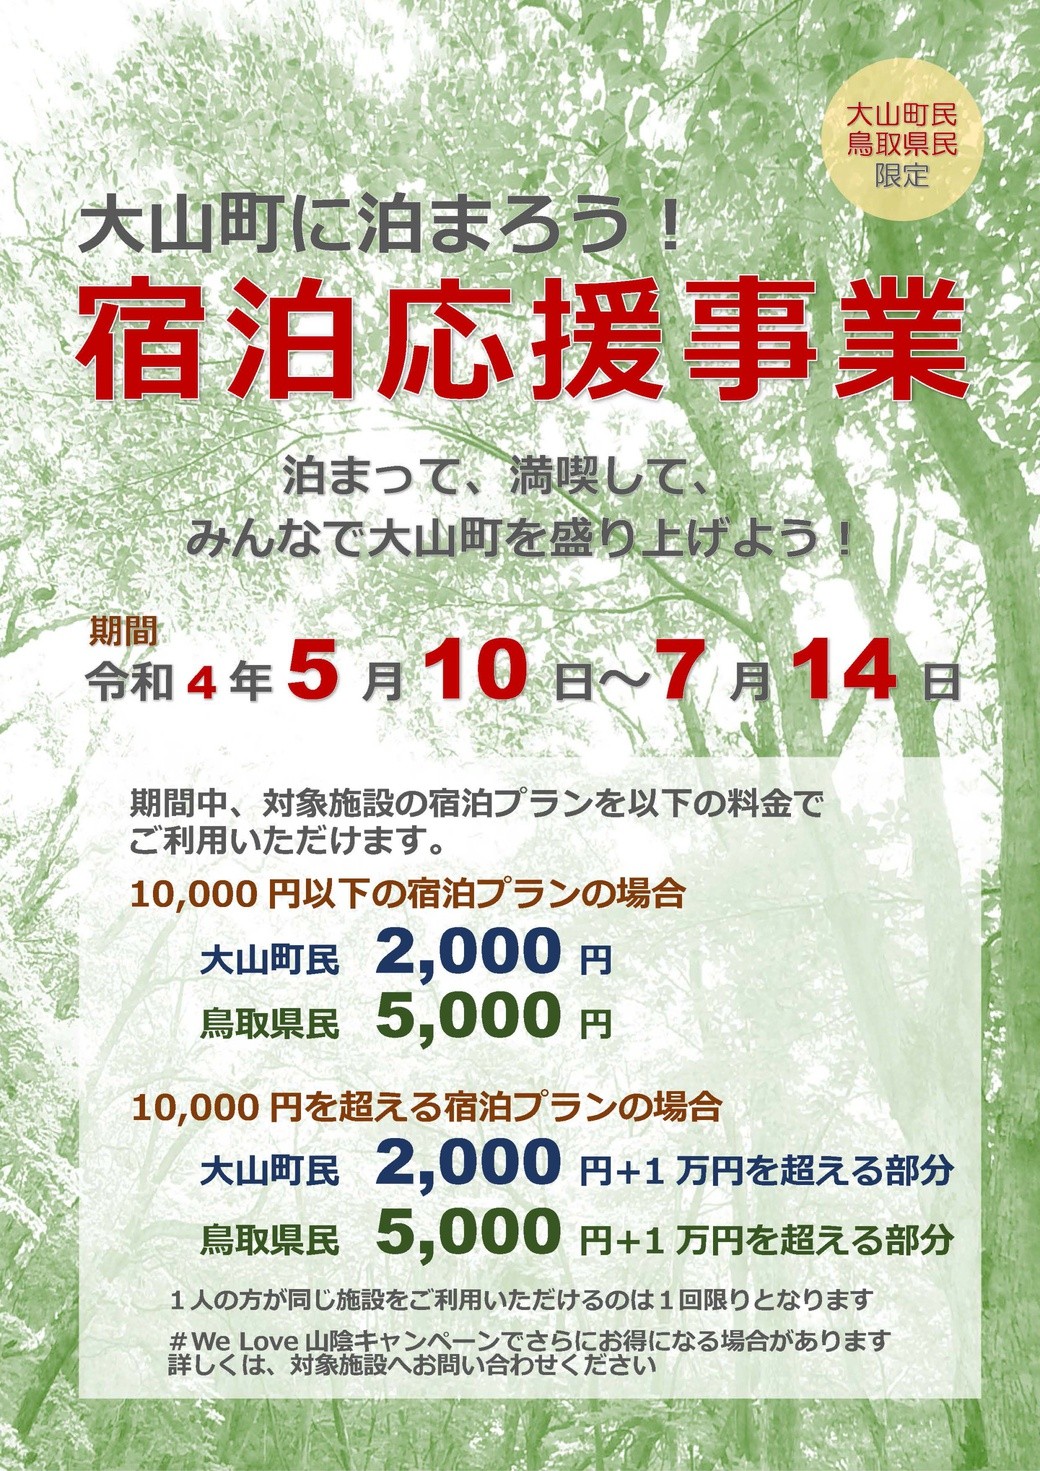 鳥取県大山町で実施される宿泊料金割引キャンペーン「大山町に泊まろう！」宿泊応援事業のチラシ